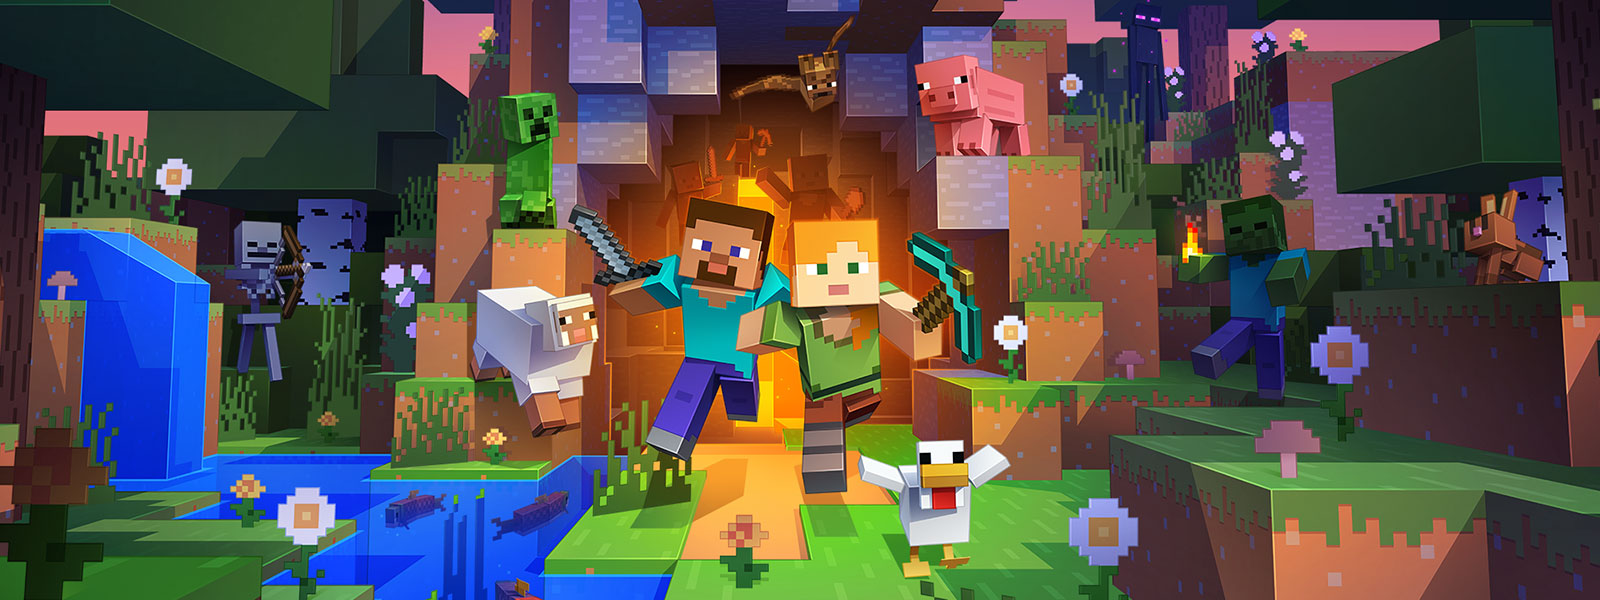 Δύο χαρακτήρες βγαίνουν από ένα τούνελ με πολλά πλάσματα από τον κόσμο του Minecraft